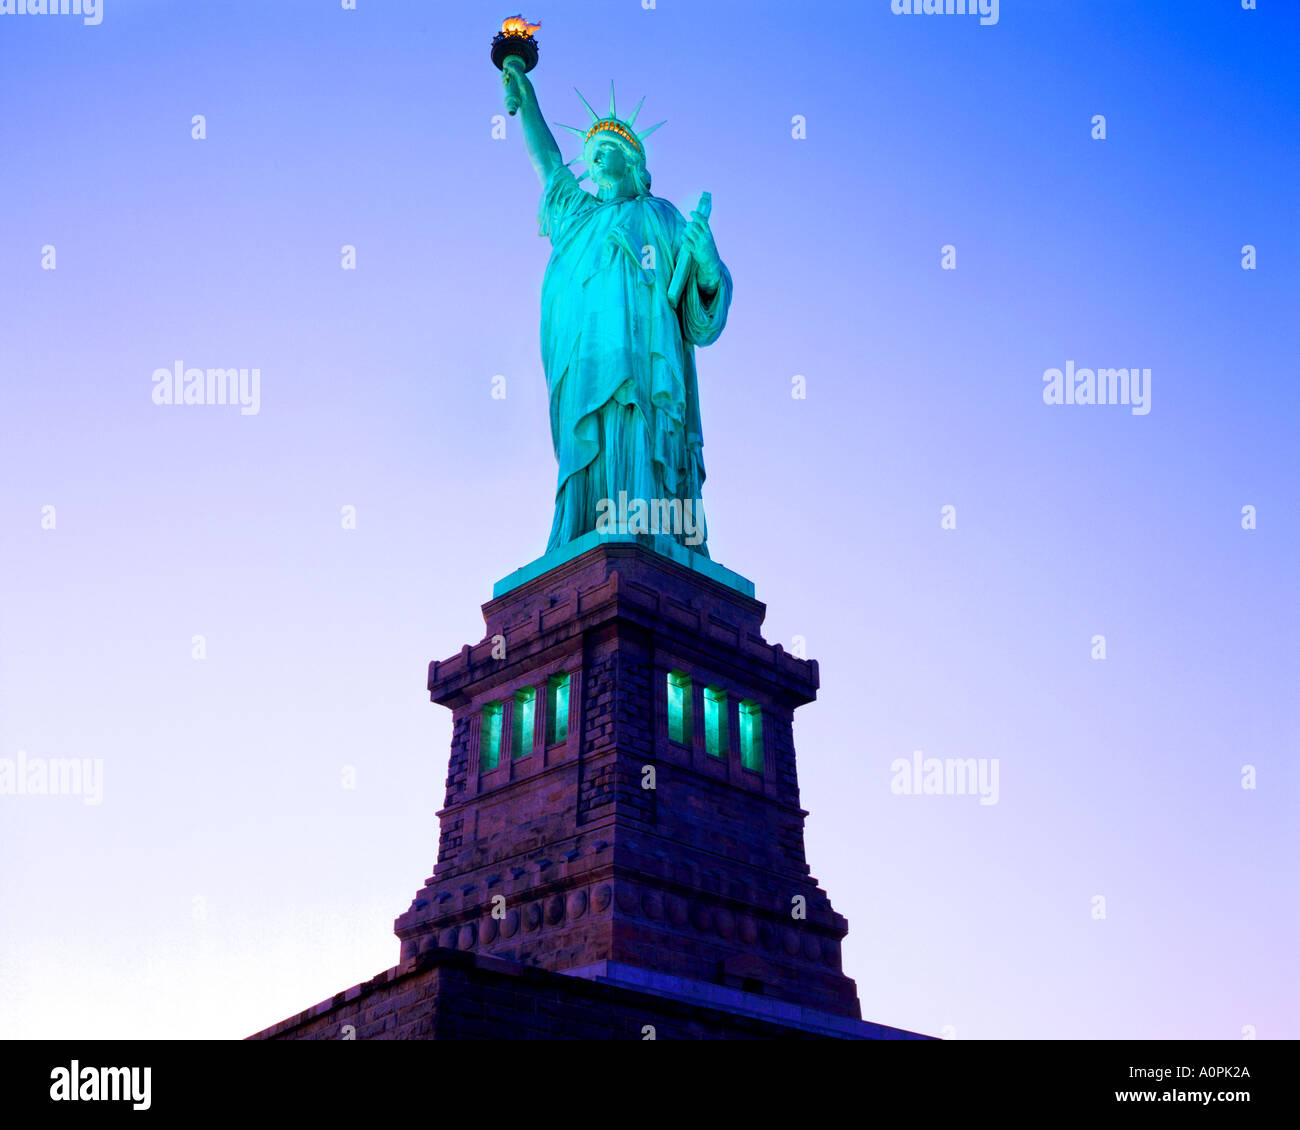 Au coucher du soleil, la statue de la liberté Statue of Liberty National Monument New York Banque D'Images